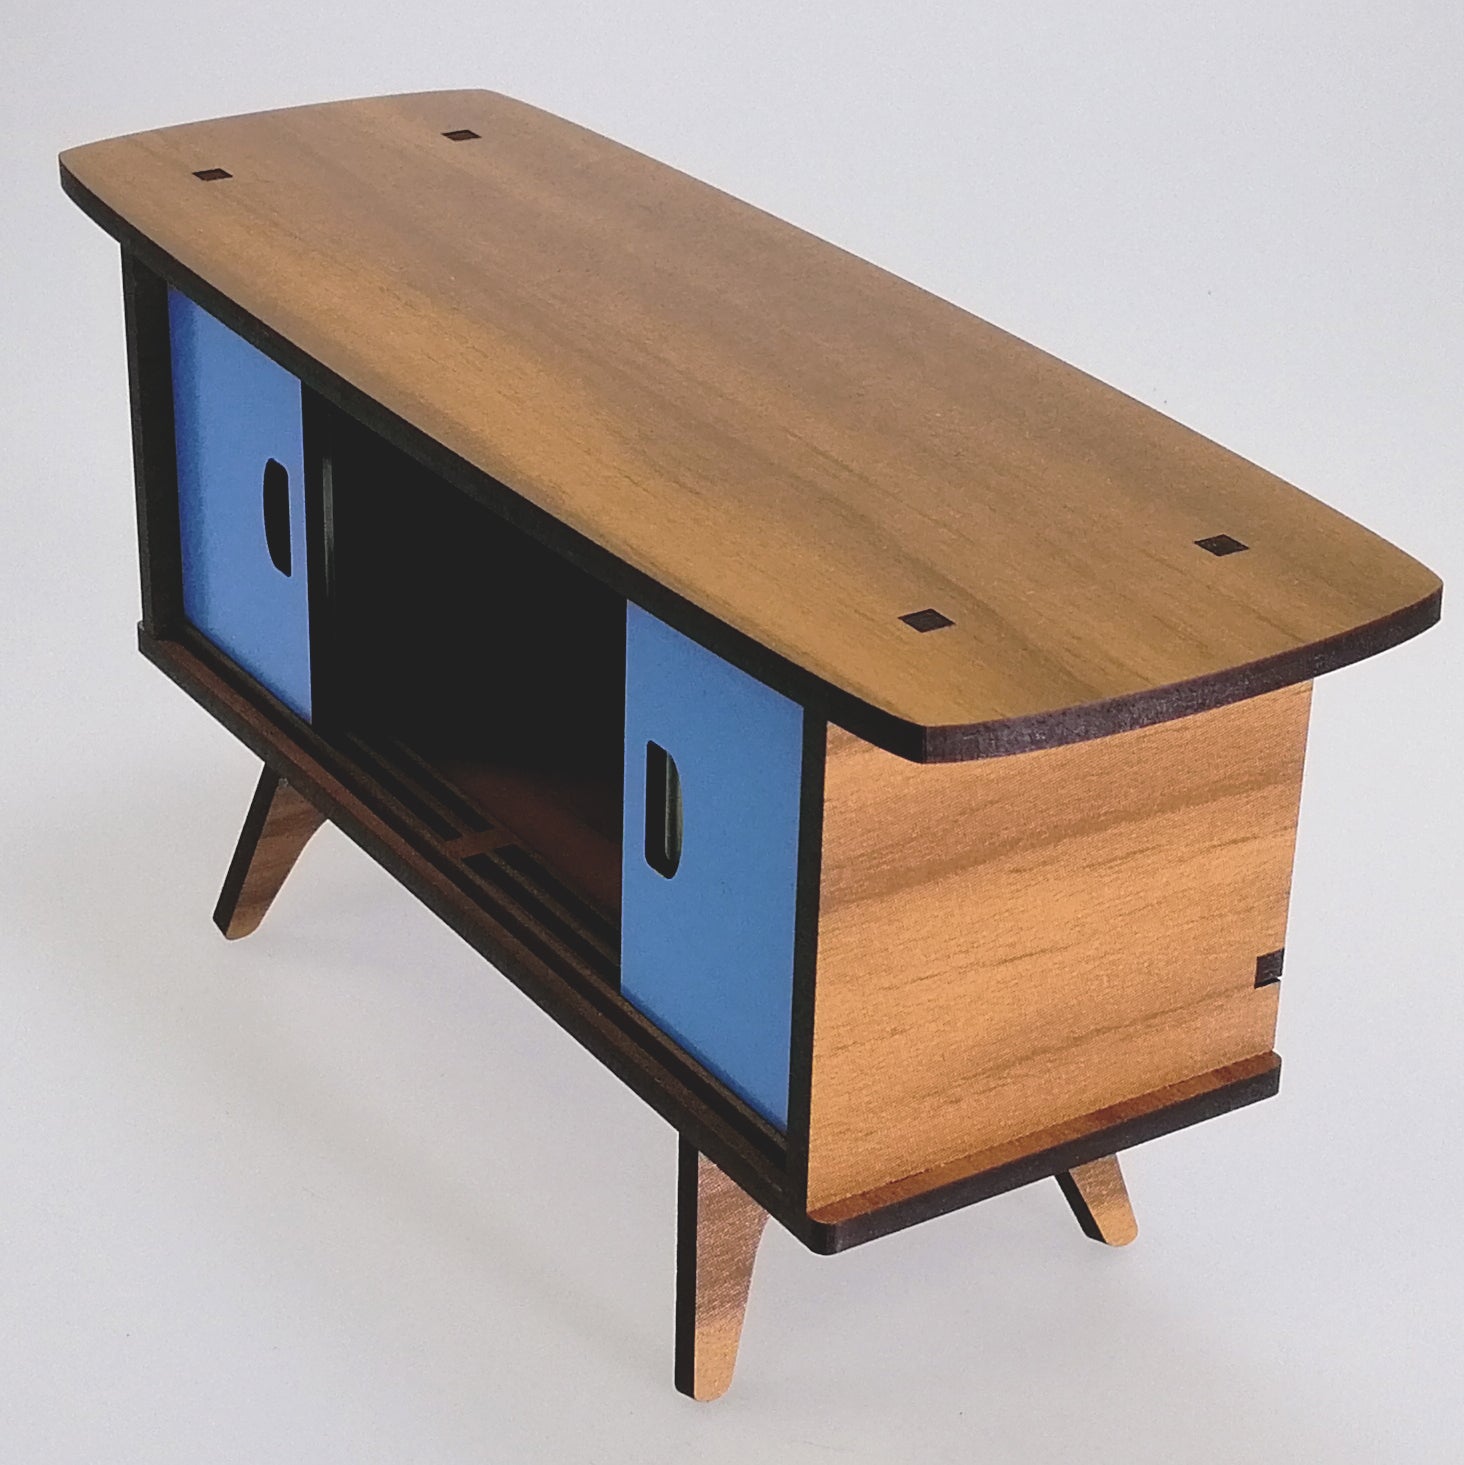 Four-Door Mini Cabinet Woodcraft - Cream & Blue